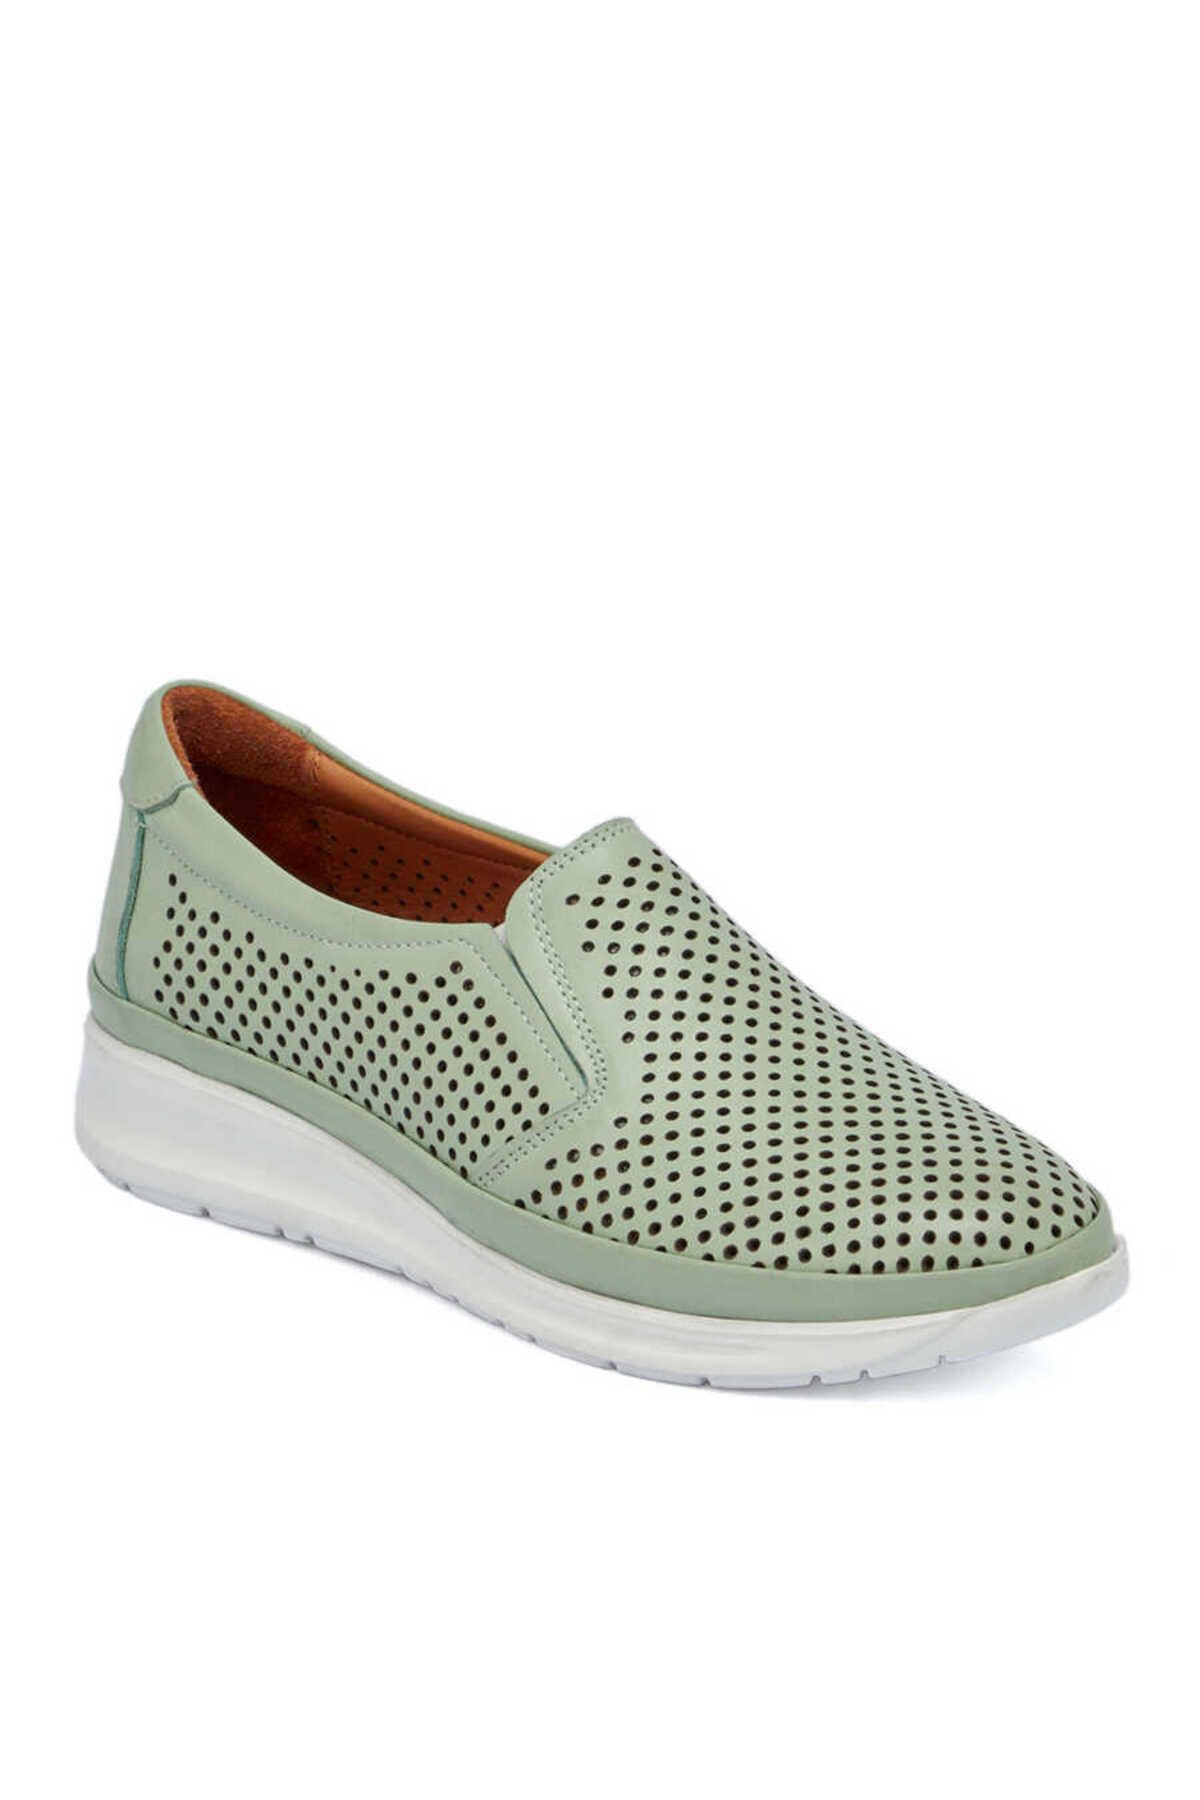 Tergan Yeşil Deri Kadın Casual Ayakkabı - K23I1AY66640-G81